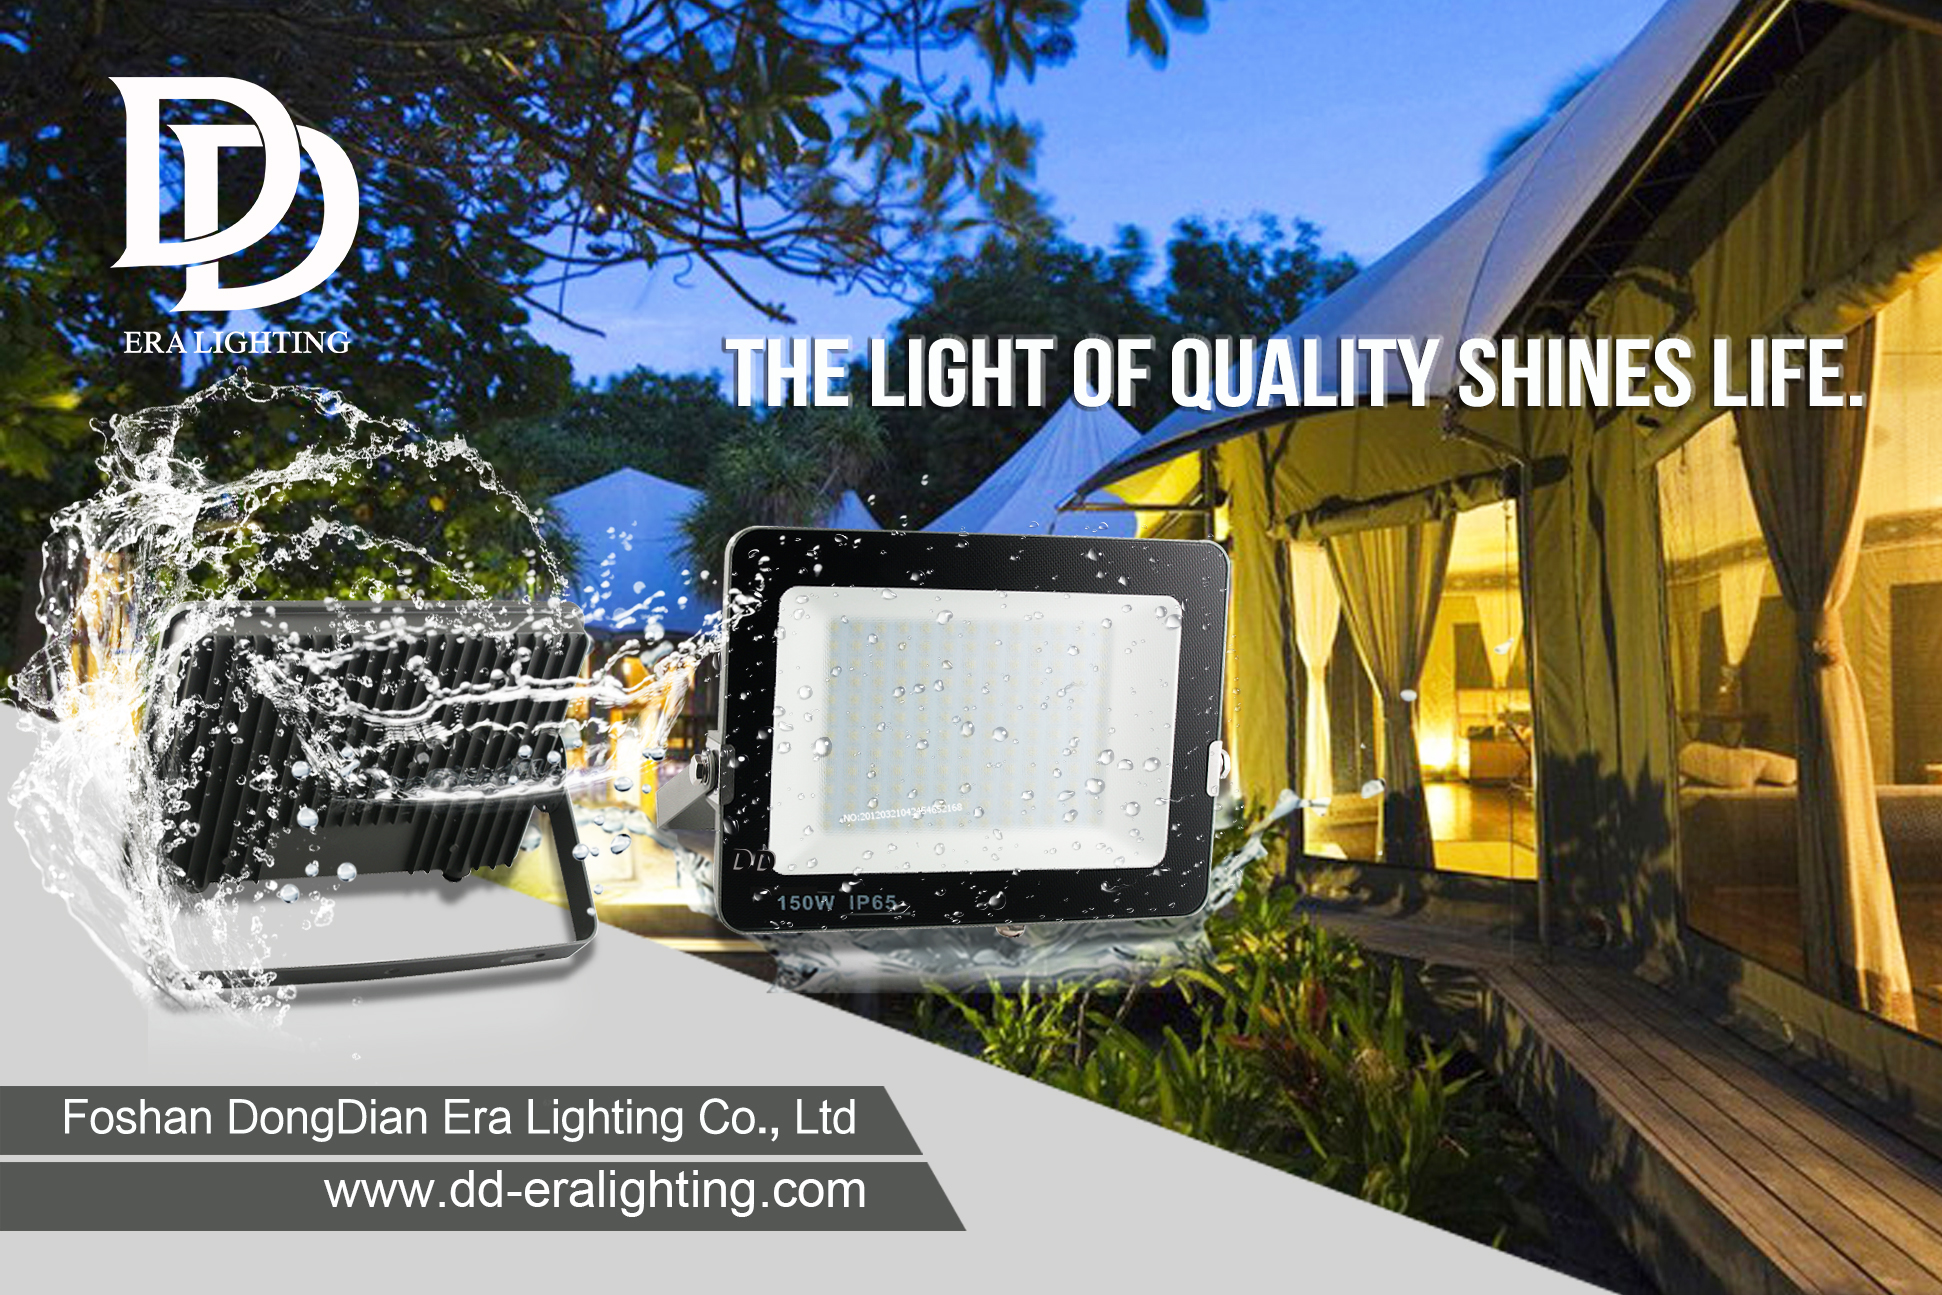 đèn led | Ring mở rộng hệ thống chiếu sáng thông minh với bóng đèn năng lượng mặt trời và bóng đèn trong nhà